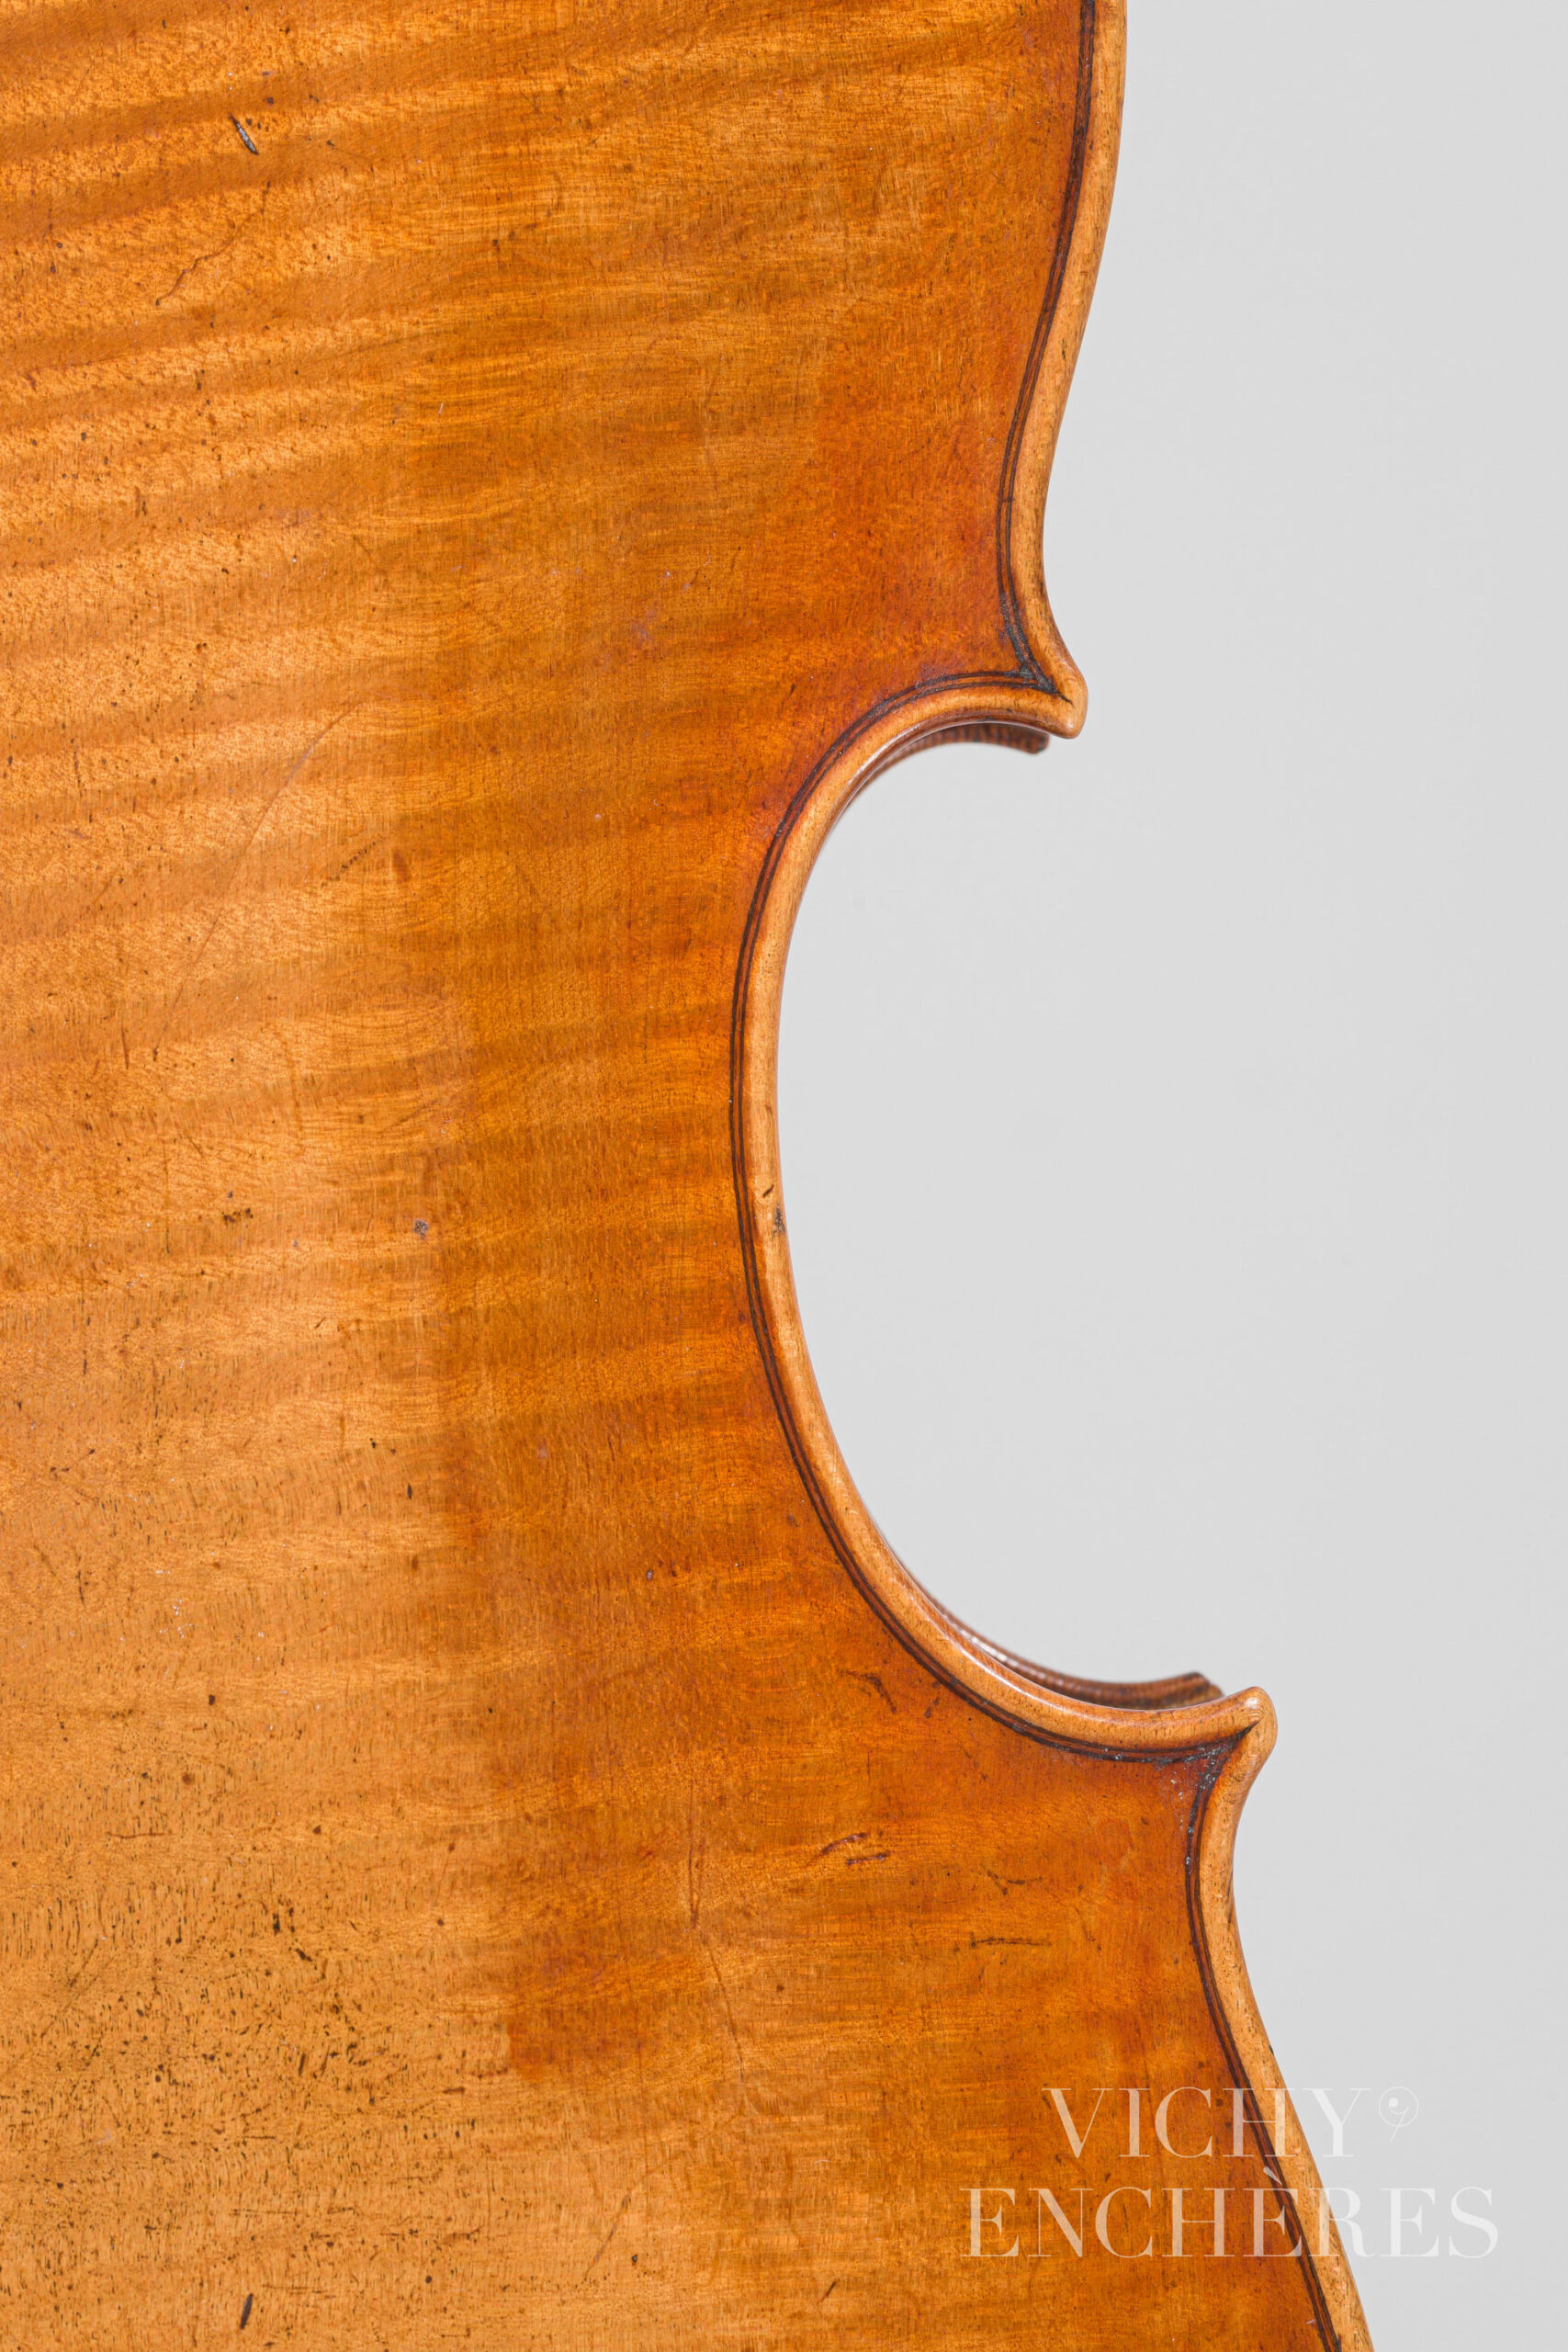 Violon de Louis GUERSAN Instrument mis en vente par Vichy Enchères le 1er décembre 2022 © Christophe Darbelet